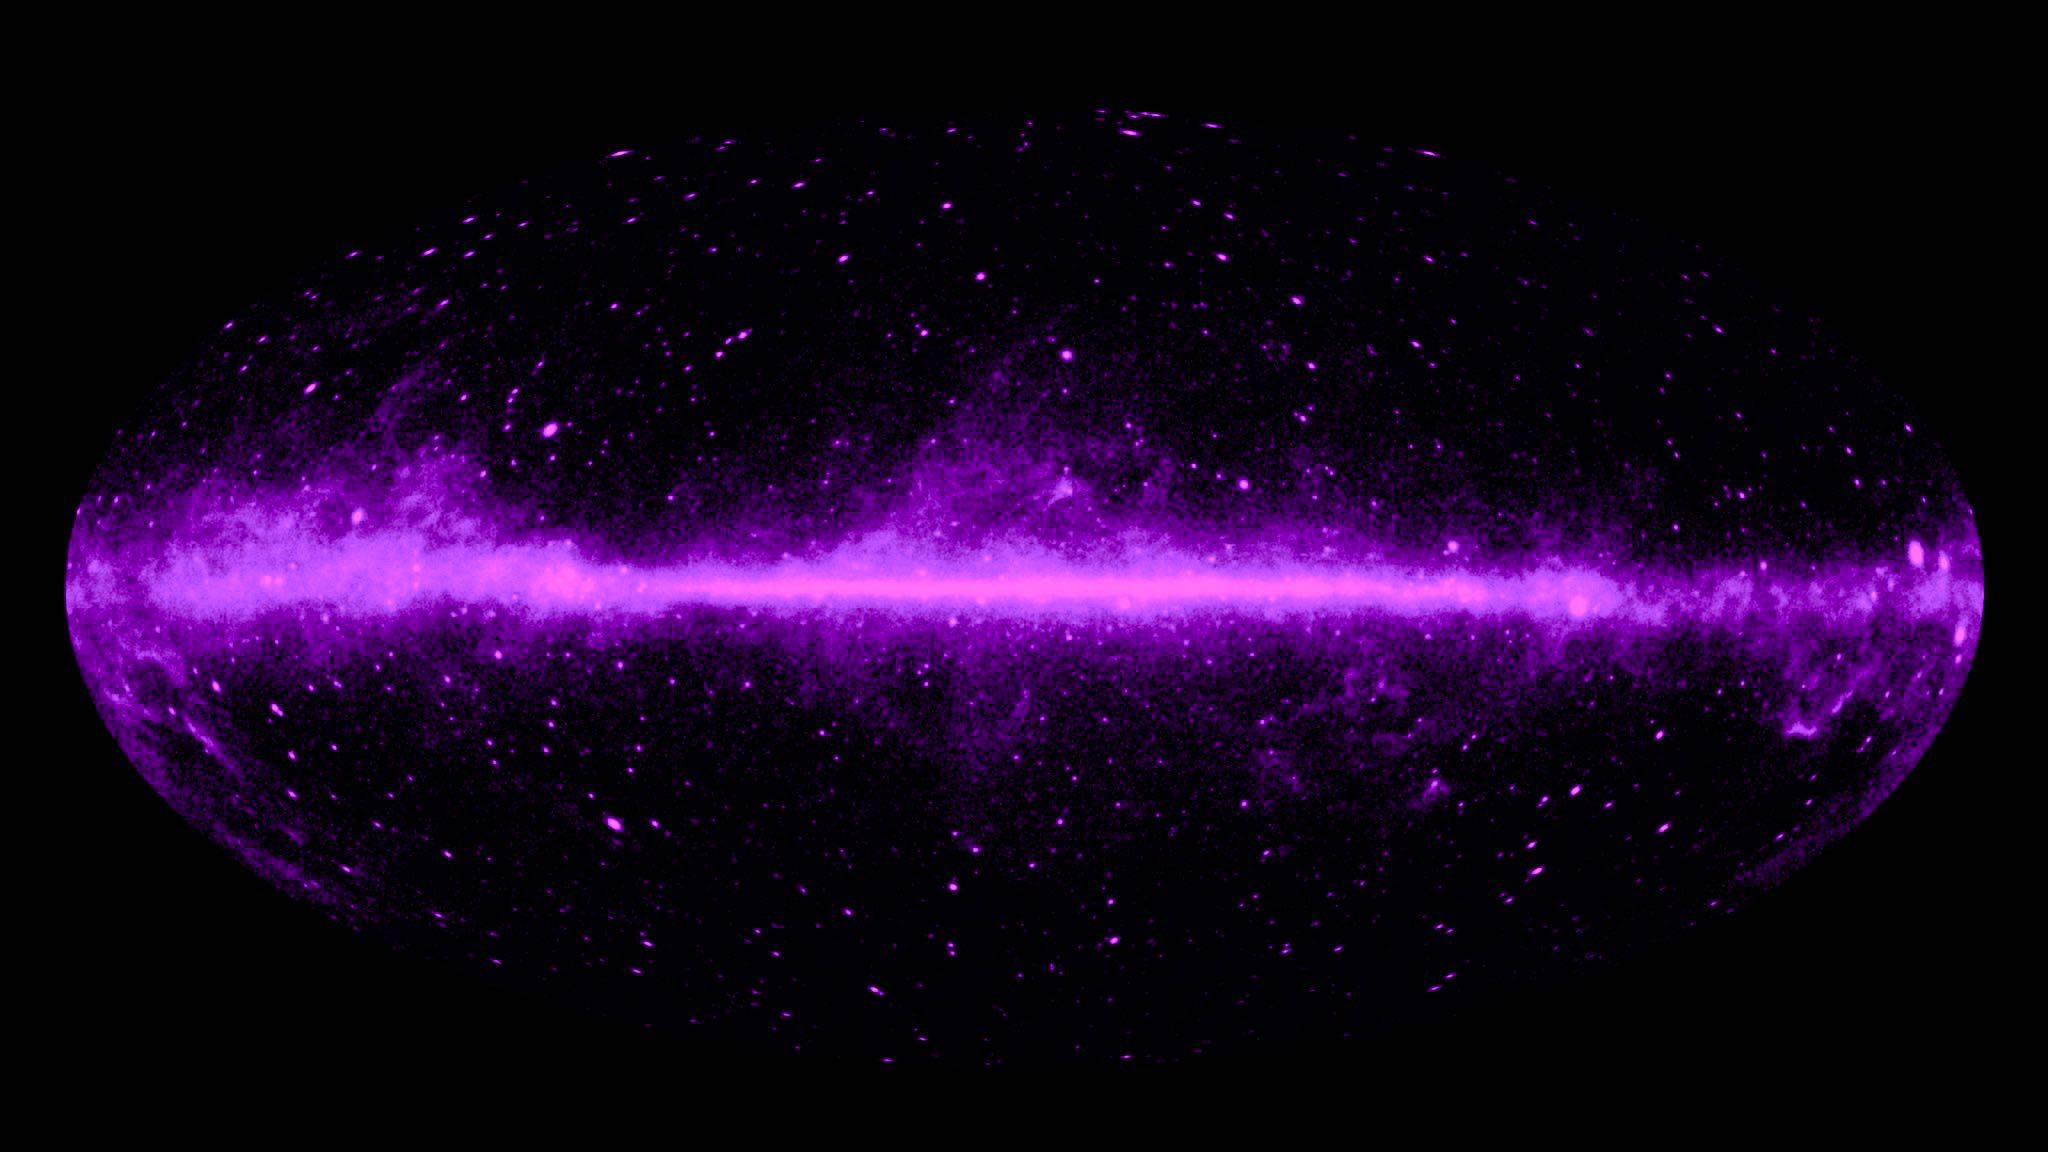 中央銀河のNGC2356た膨大な量の暗黒物質